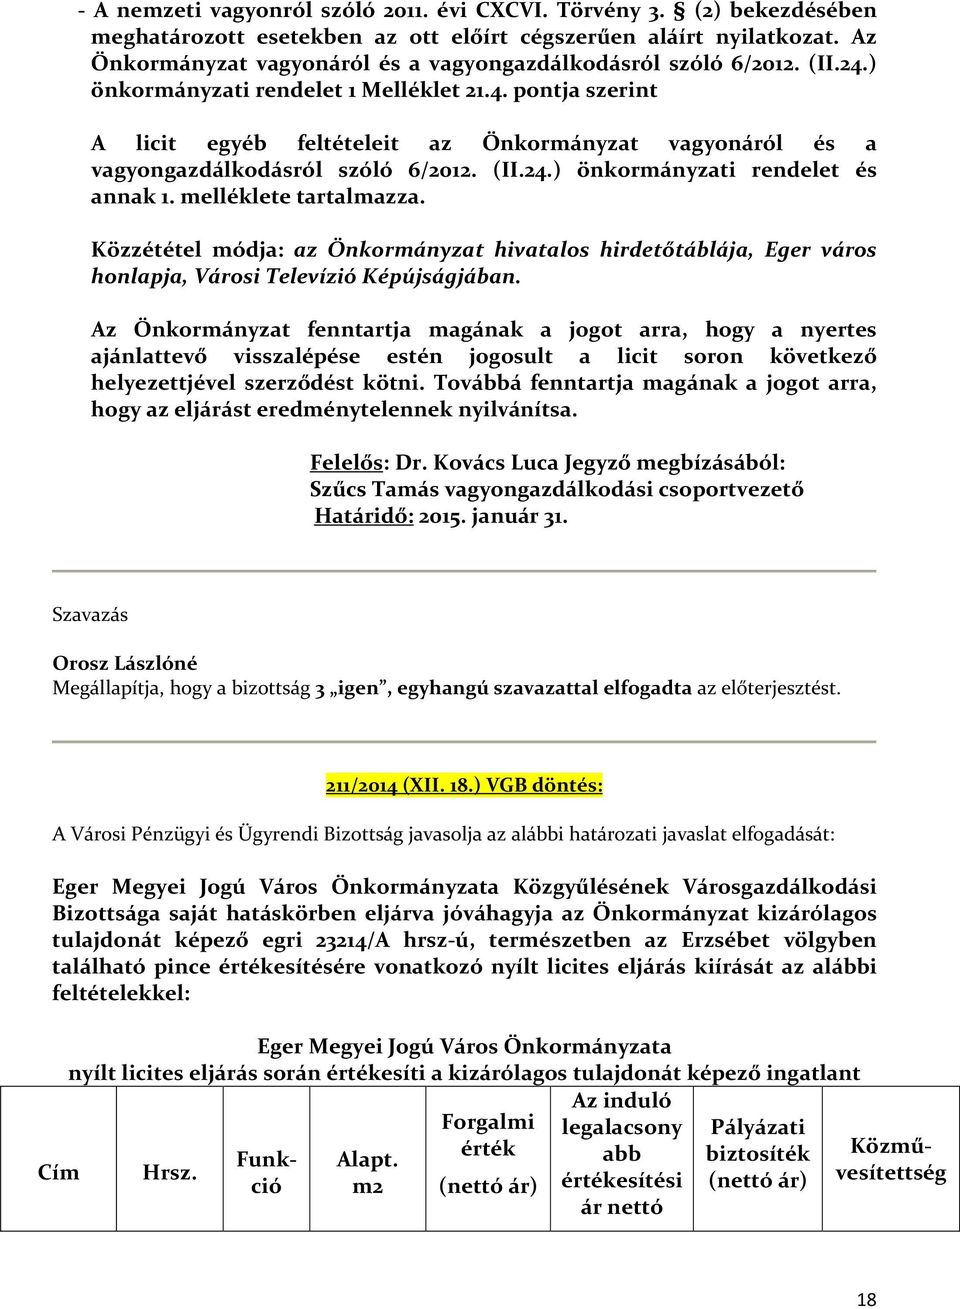 (II.24.) önkormányzati rendelet és annak 1. melléklete tartalmazza. Közzététel módja: az Önkormányzat hivatalos hirdetőtáblája, Eger város honlapja, Városi Televízió Képújságjában.